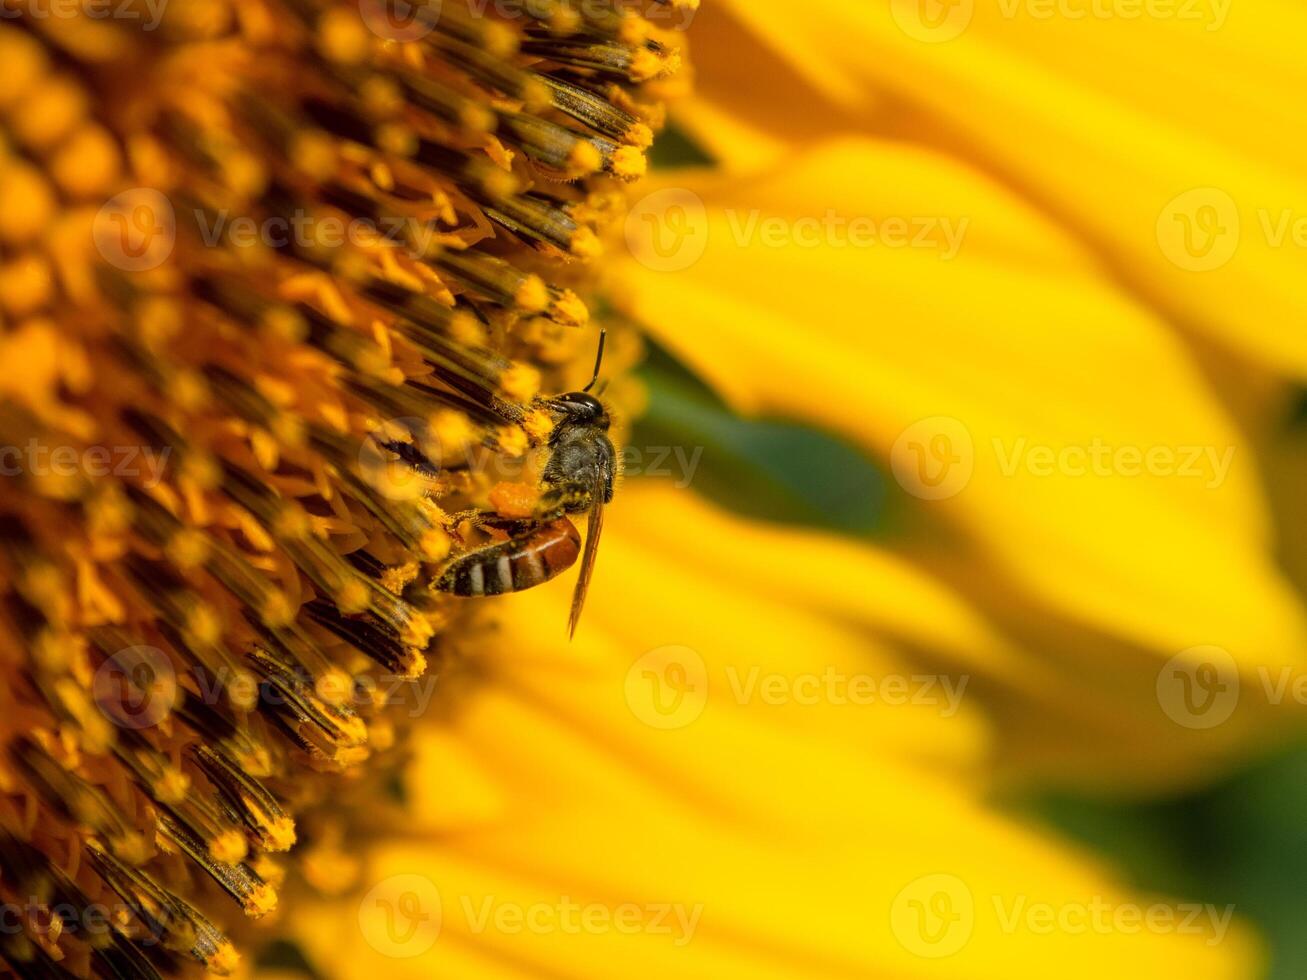 bi samlar nektar från en solros foto